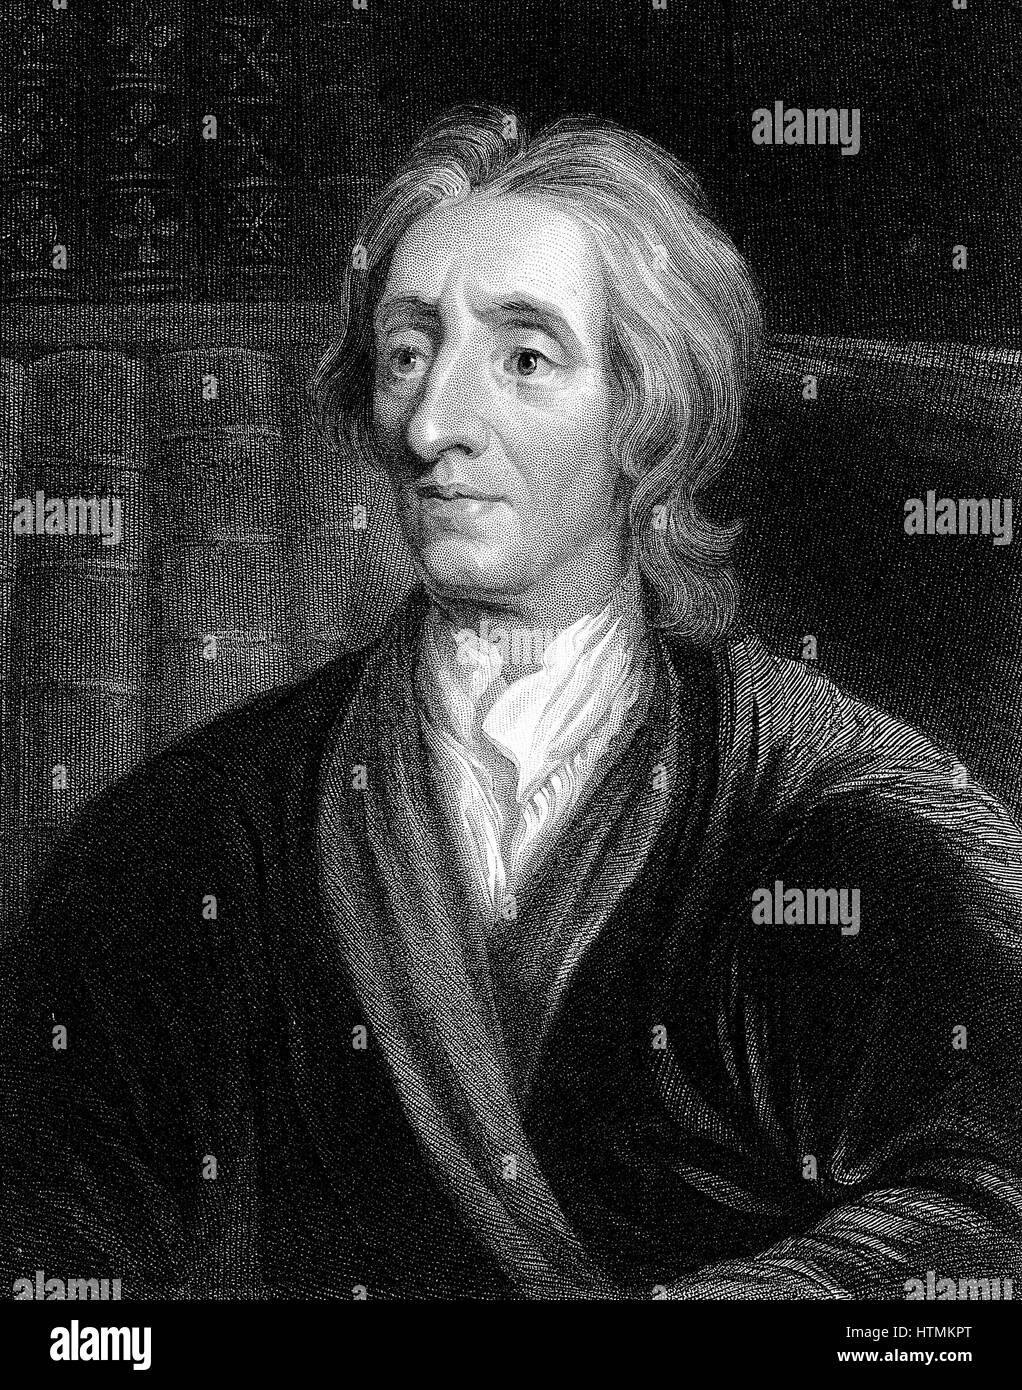 John Locke (1632-1704) filósofo inglés. Retrato grabado por Kneller Foto de stock